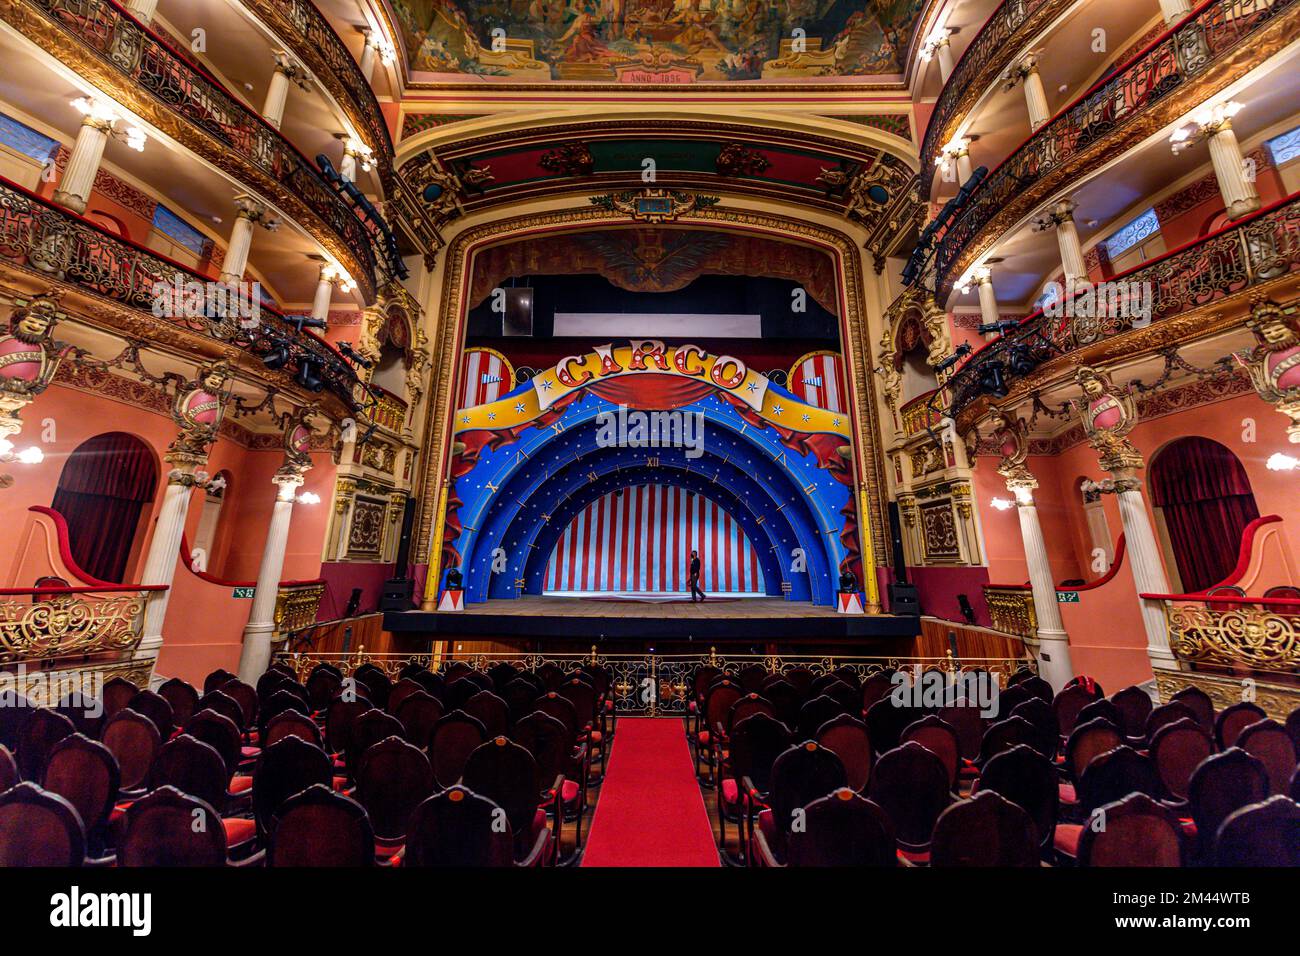 Magnifique intérieur du théâtre Amazone, Manaus, état Amazonas, Brésil Banque D'Images